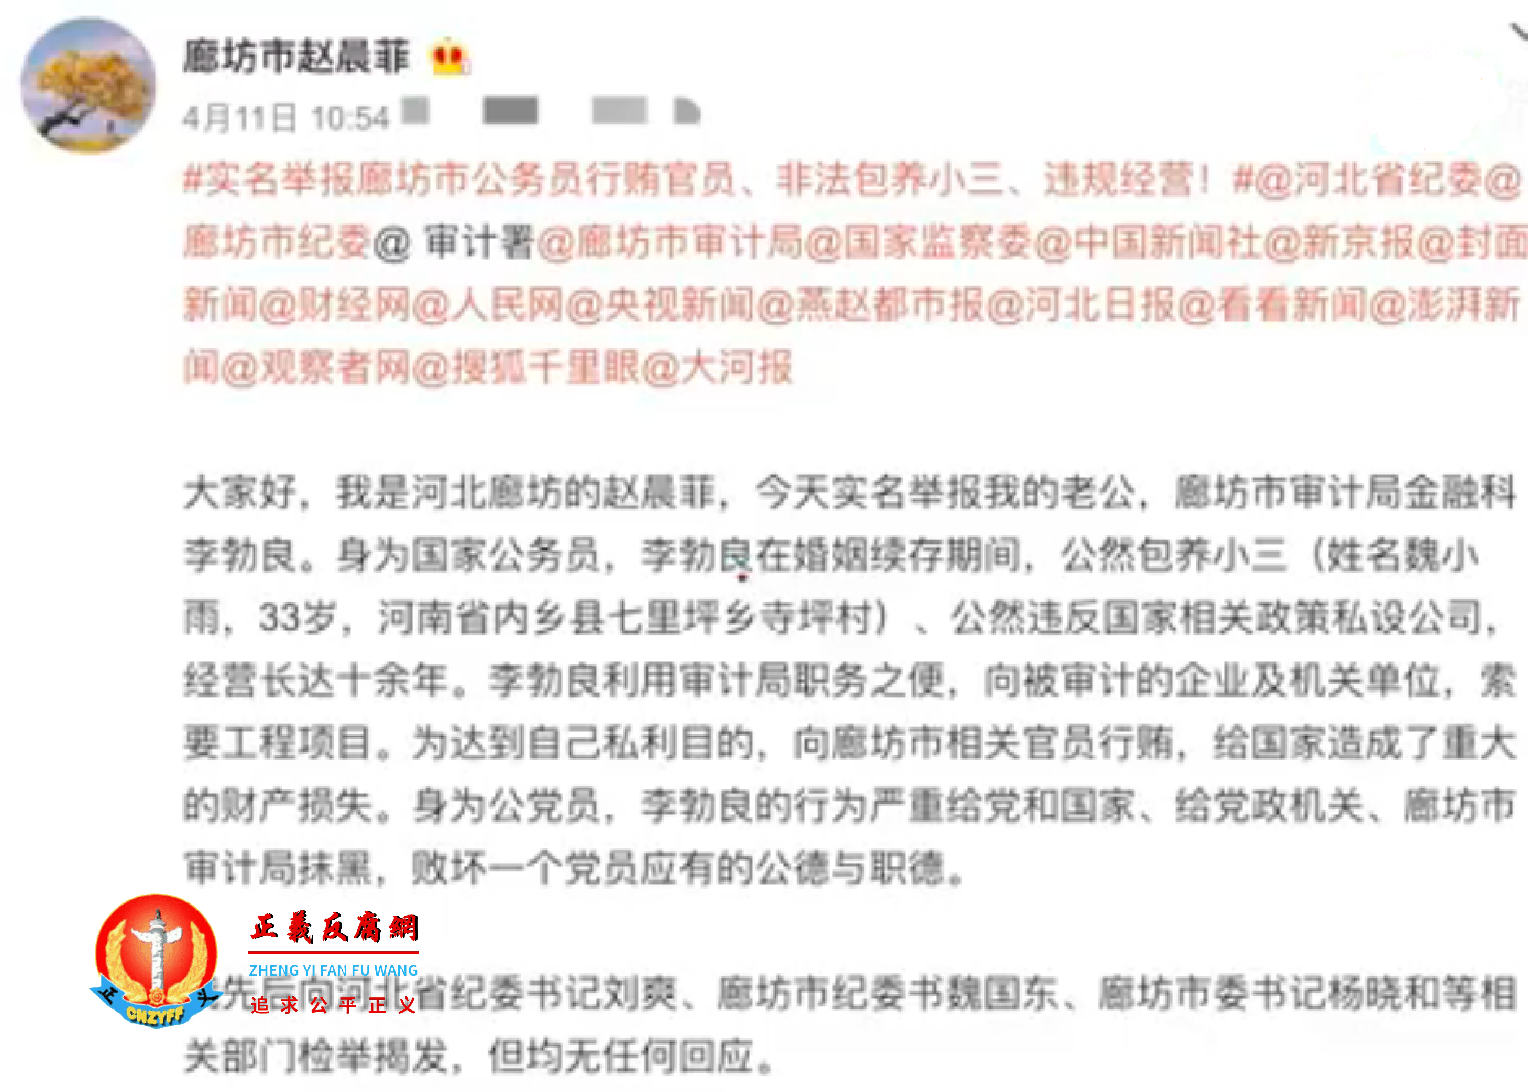 河北省廊坊市审计局金融科科长李勃良的妻子赵晨菲在微博实名举报丈夫行贿、出轨。.png